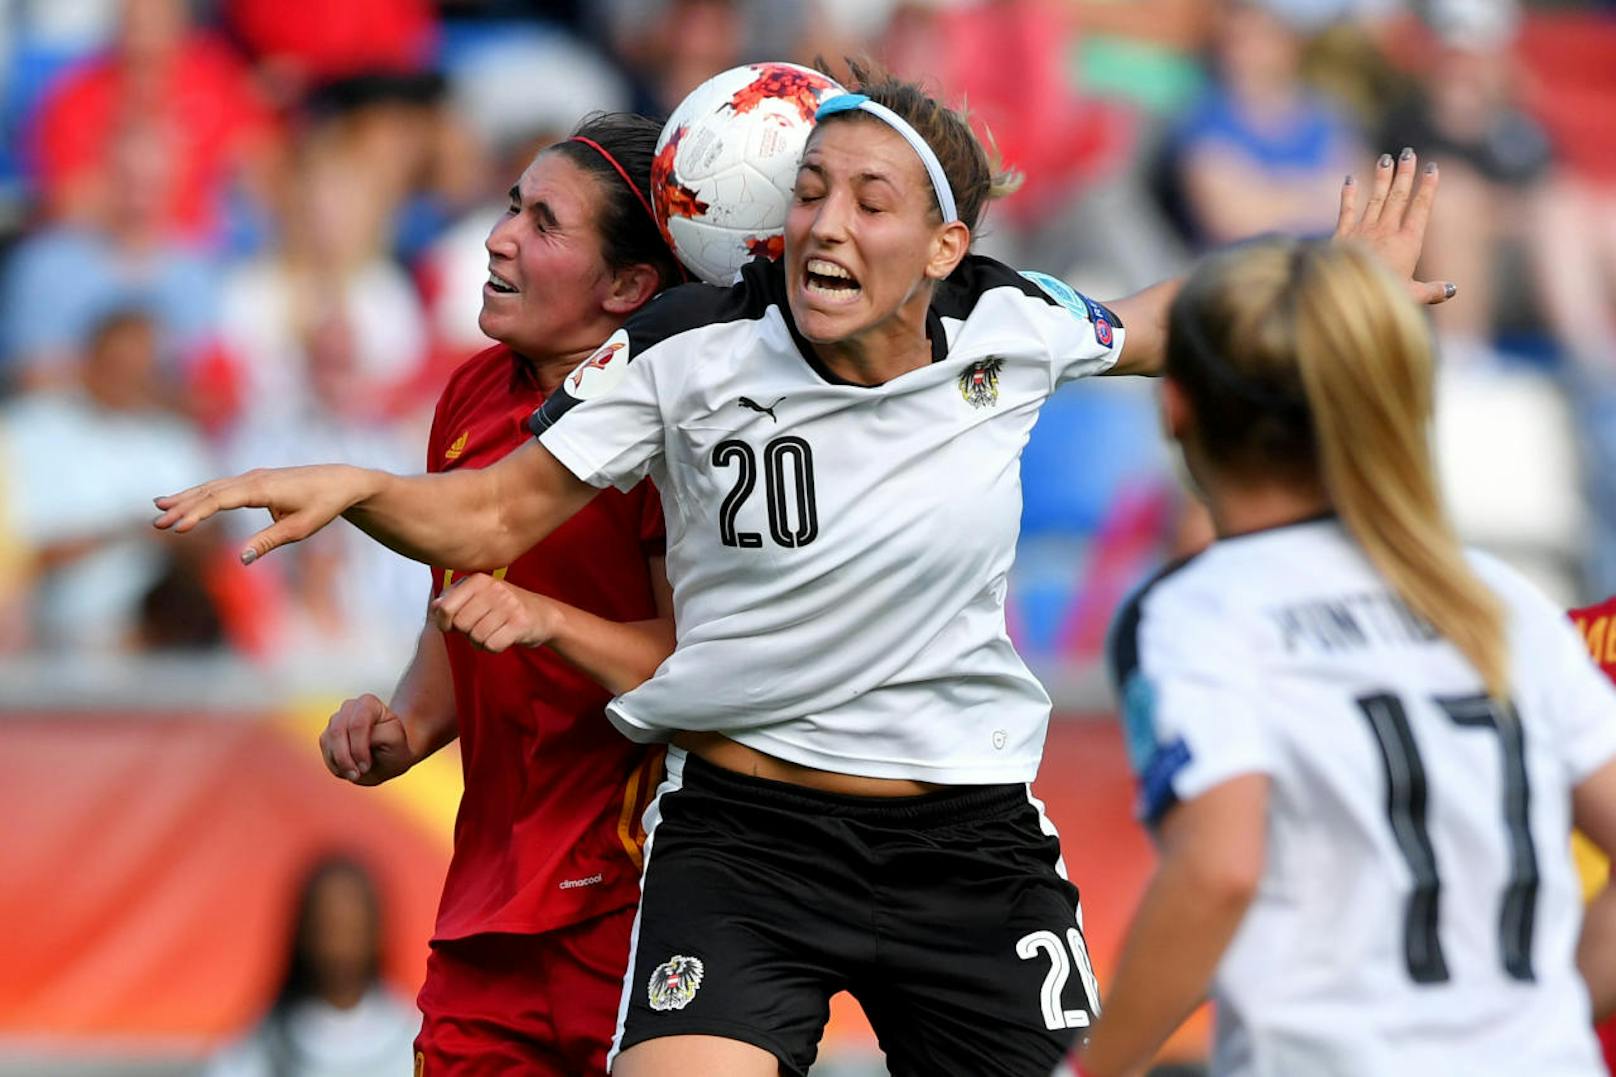 Österreichs Fußball-Damen trafen im EM-Viertelfinale auf Spanien. "Heute" hat die besten Bilder zum Durchklicken.